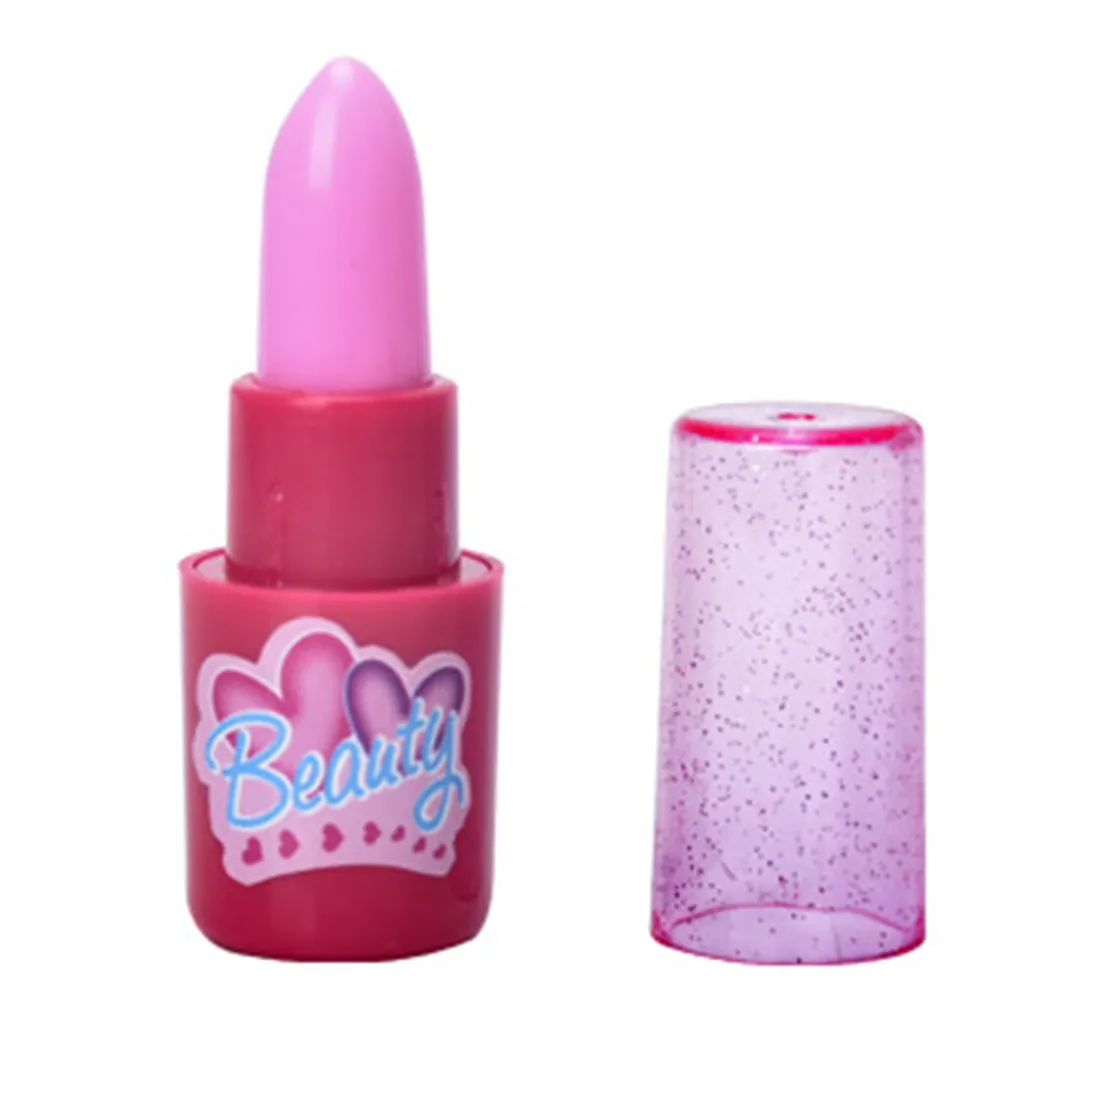 Mädchen Simulation Lidschatten Make-up Kit Pretend Play Kosmetiktasche Rollenspiel Klassisches Pretend Spielzeug für Kinder - Pink Rosy LJ201009